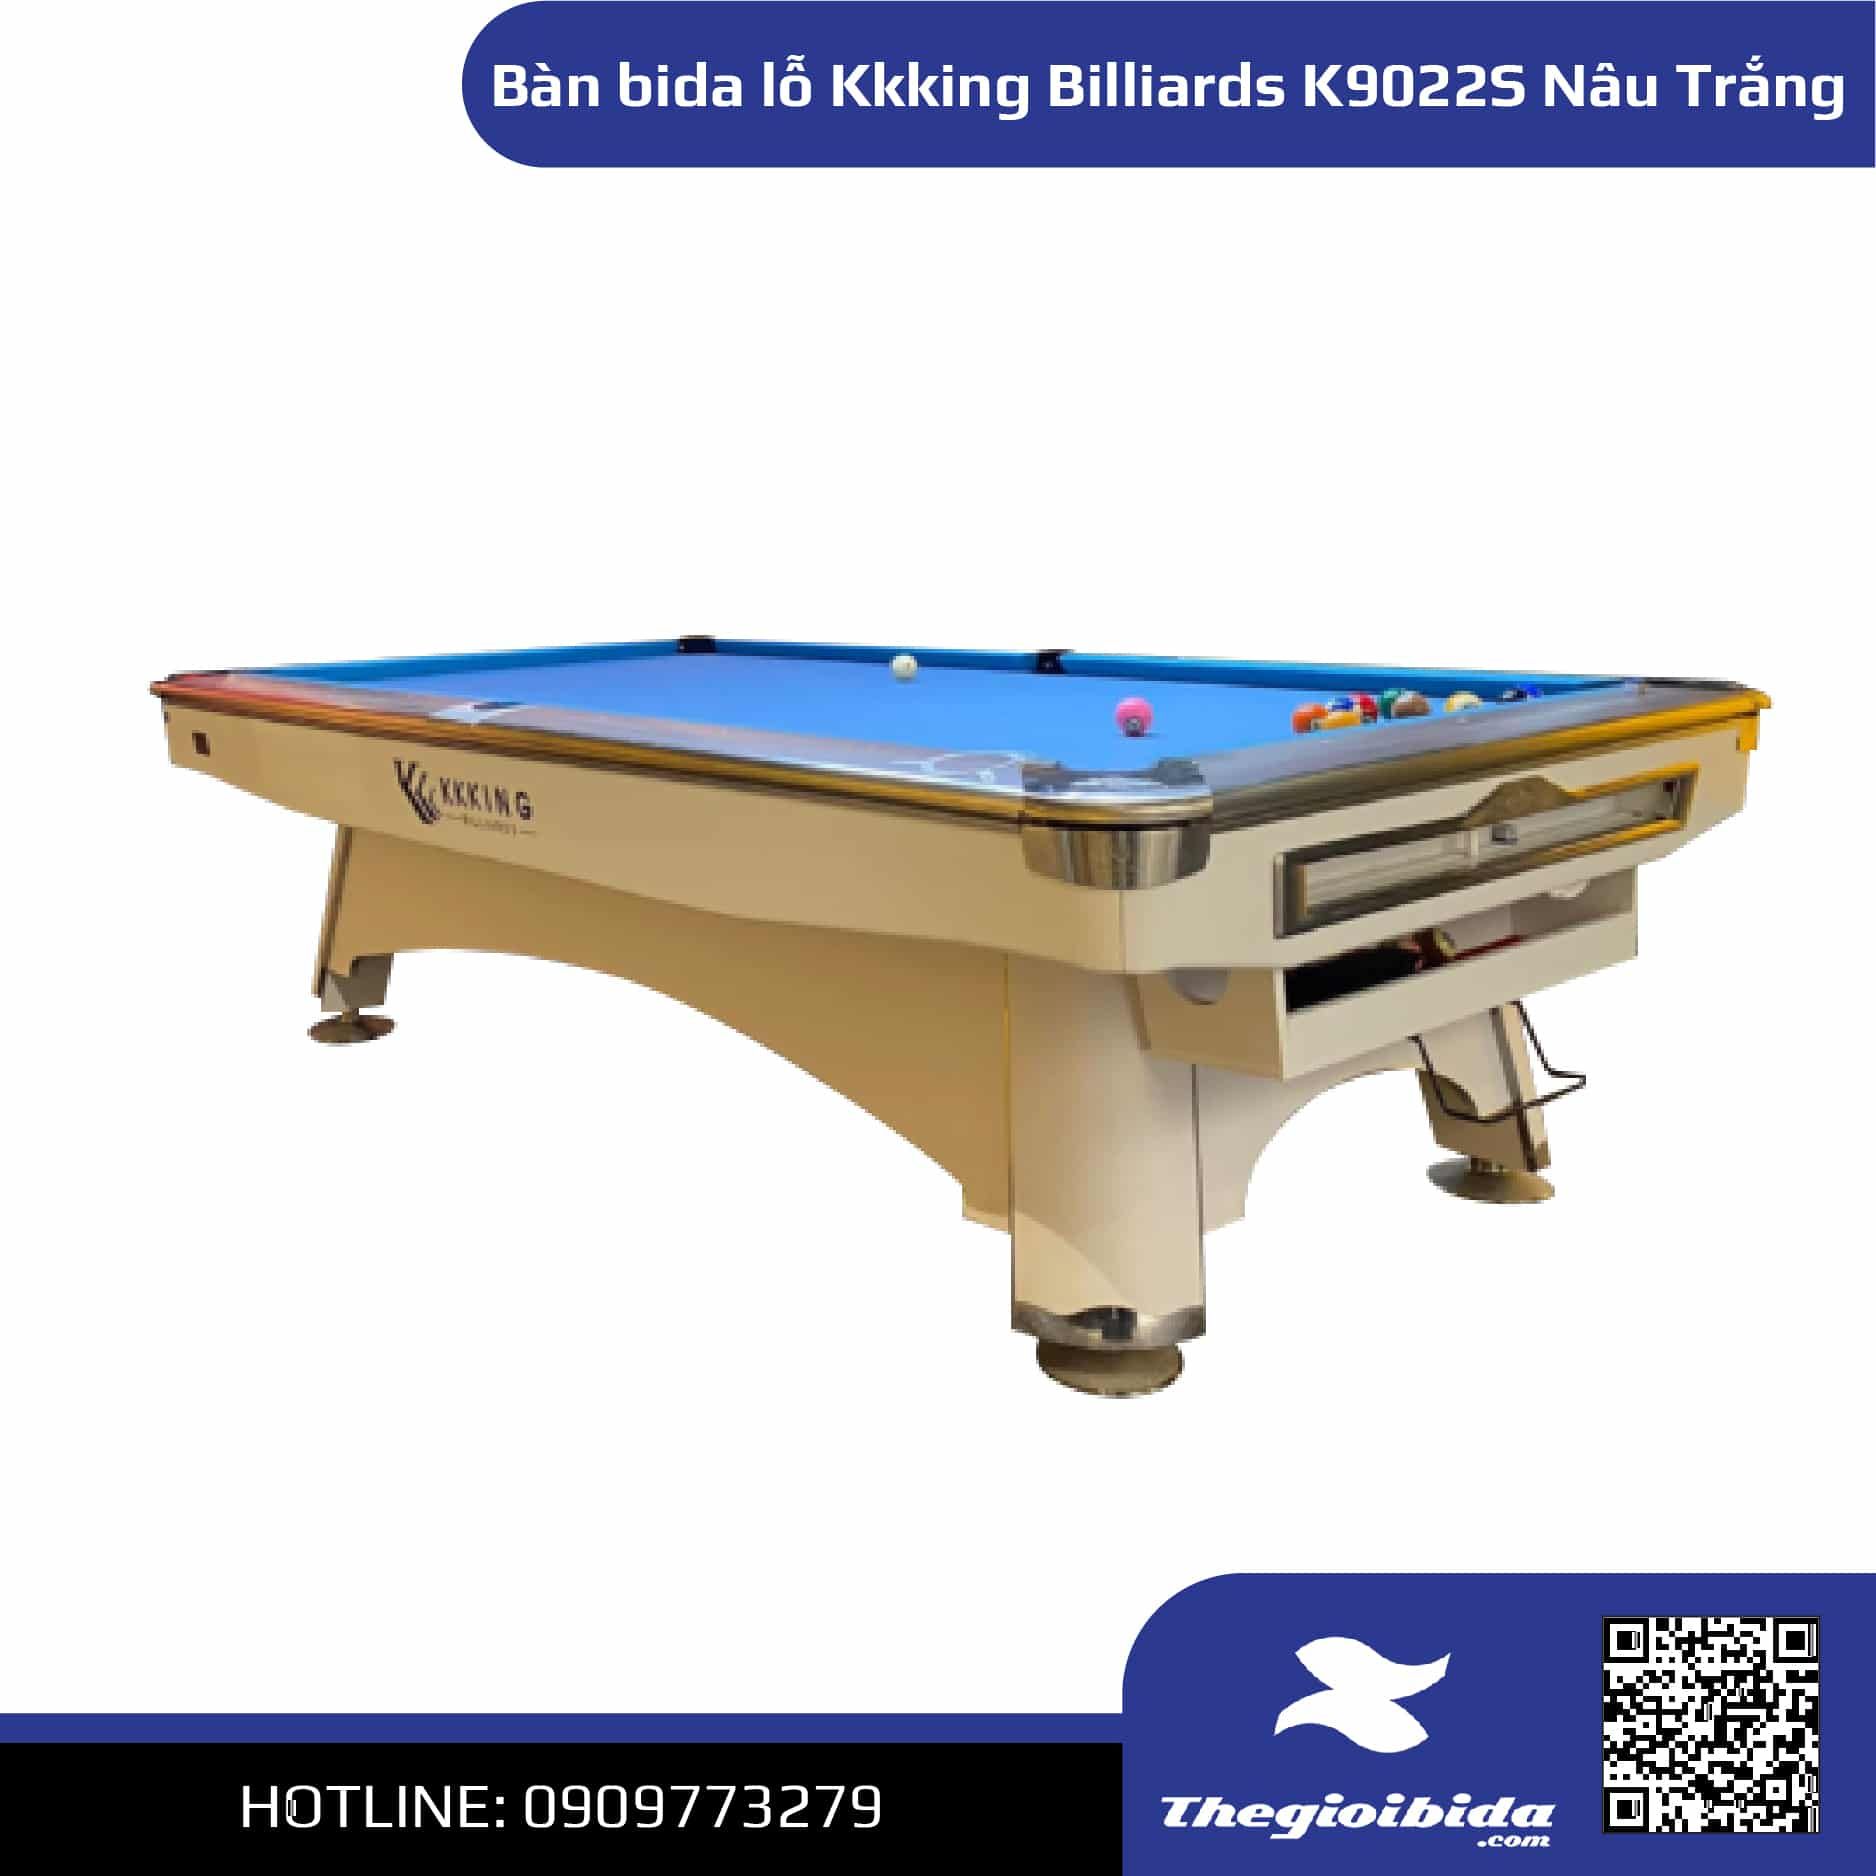 Bàn bida lỗ Kkking Billiards K9022S (Nâu trắng)